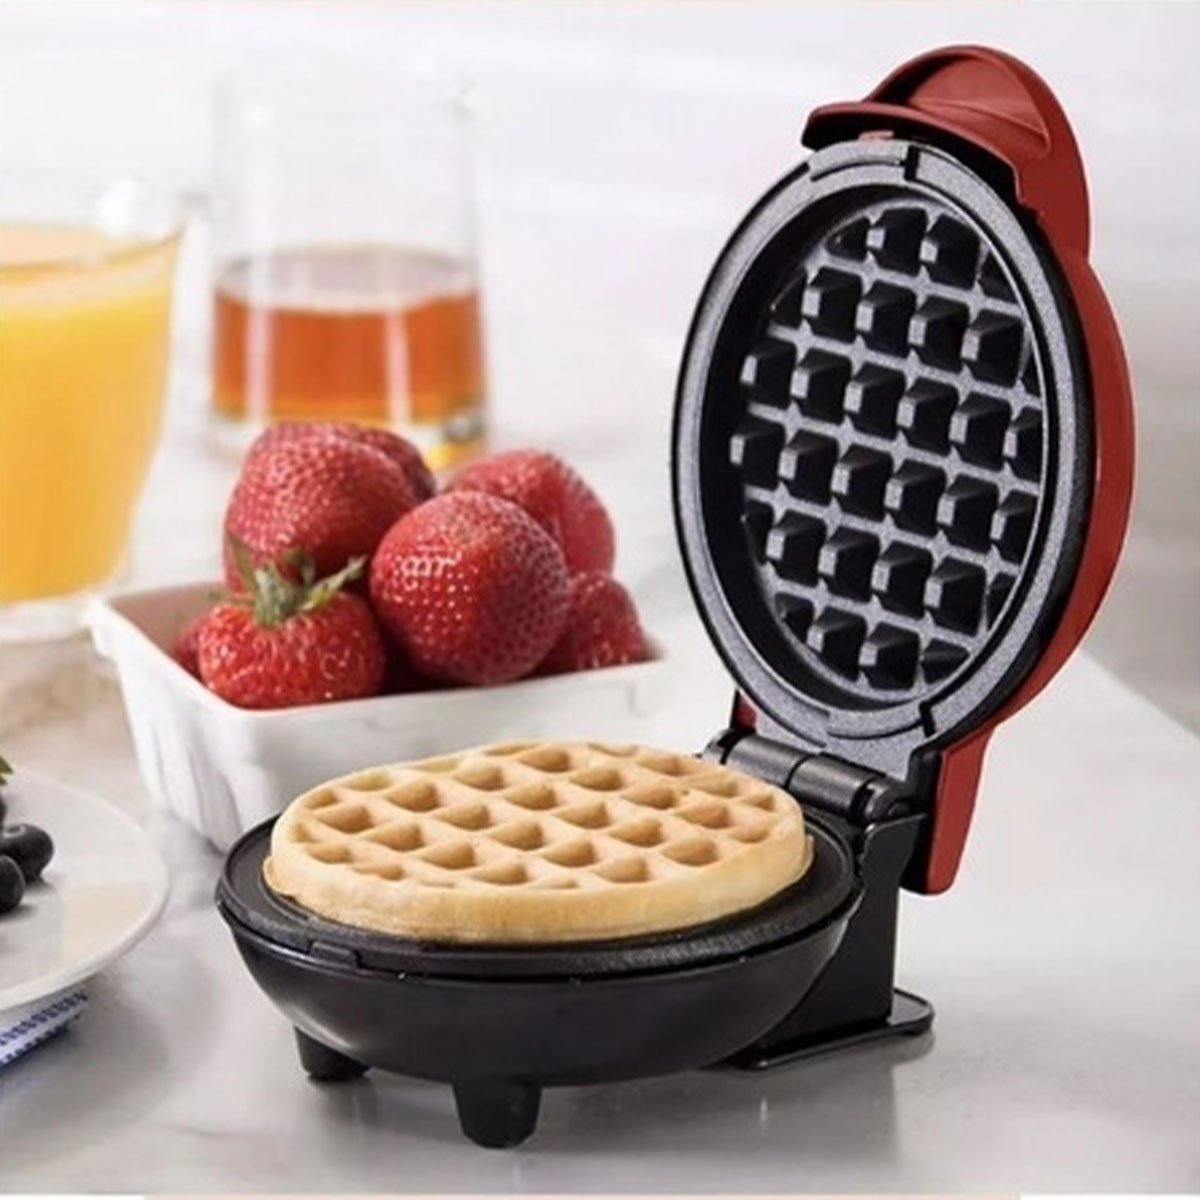 Mini Maquina de Waffles Panqueca Cozinha Refeiçao Antiaderente Cafe da Manha Lanche Ab.MIDIA LG-SK06 - 2